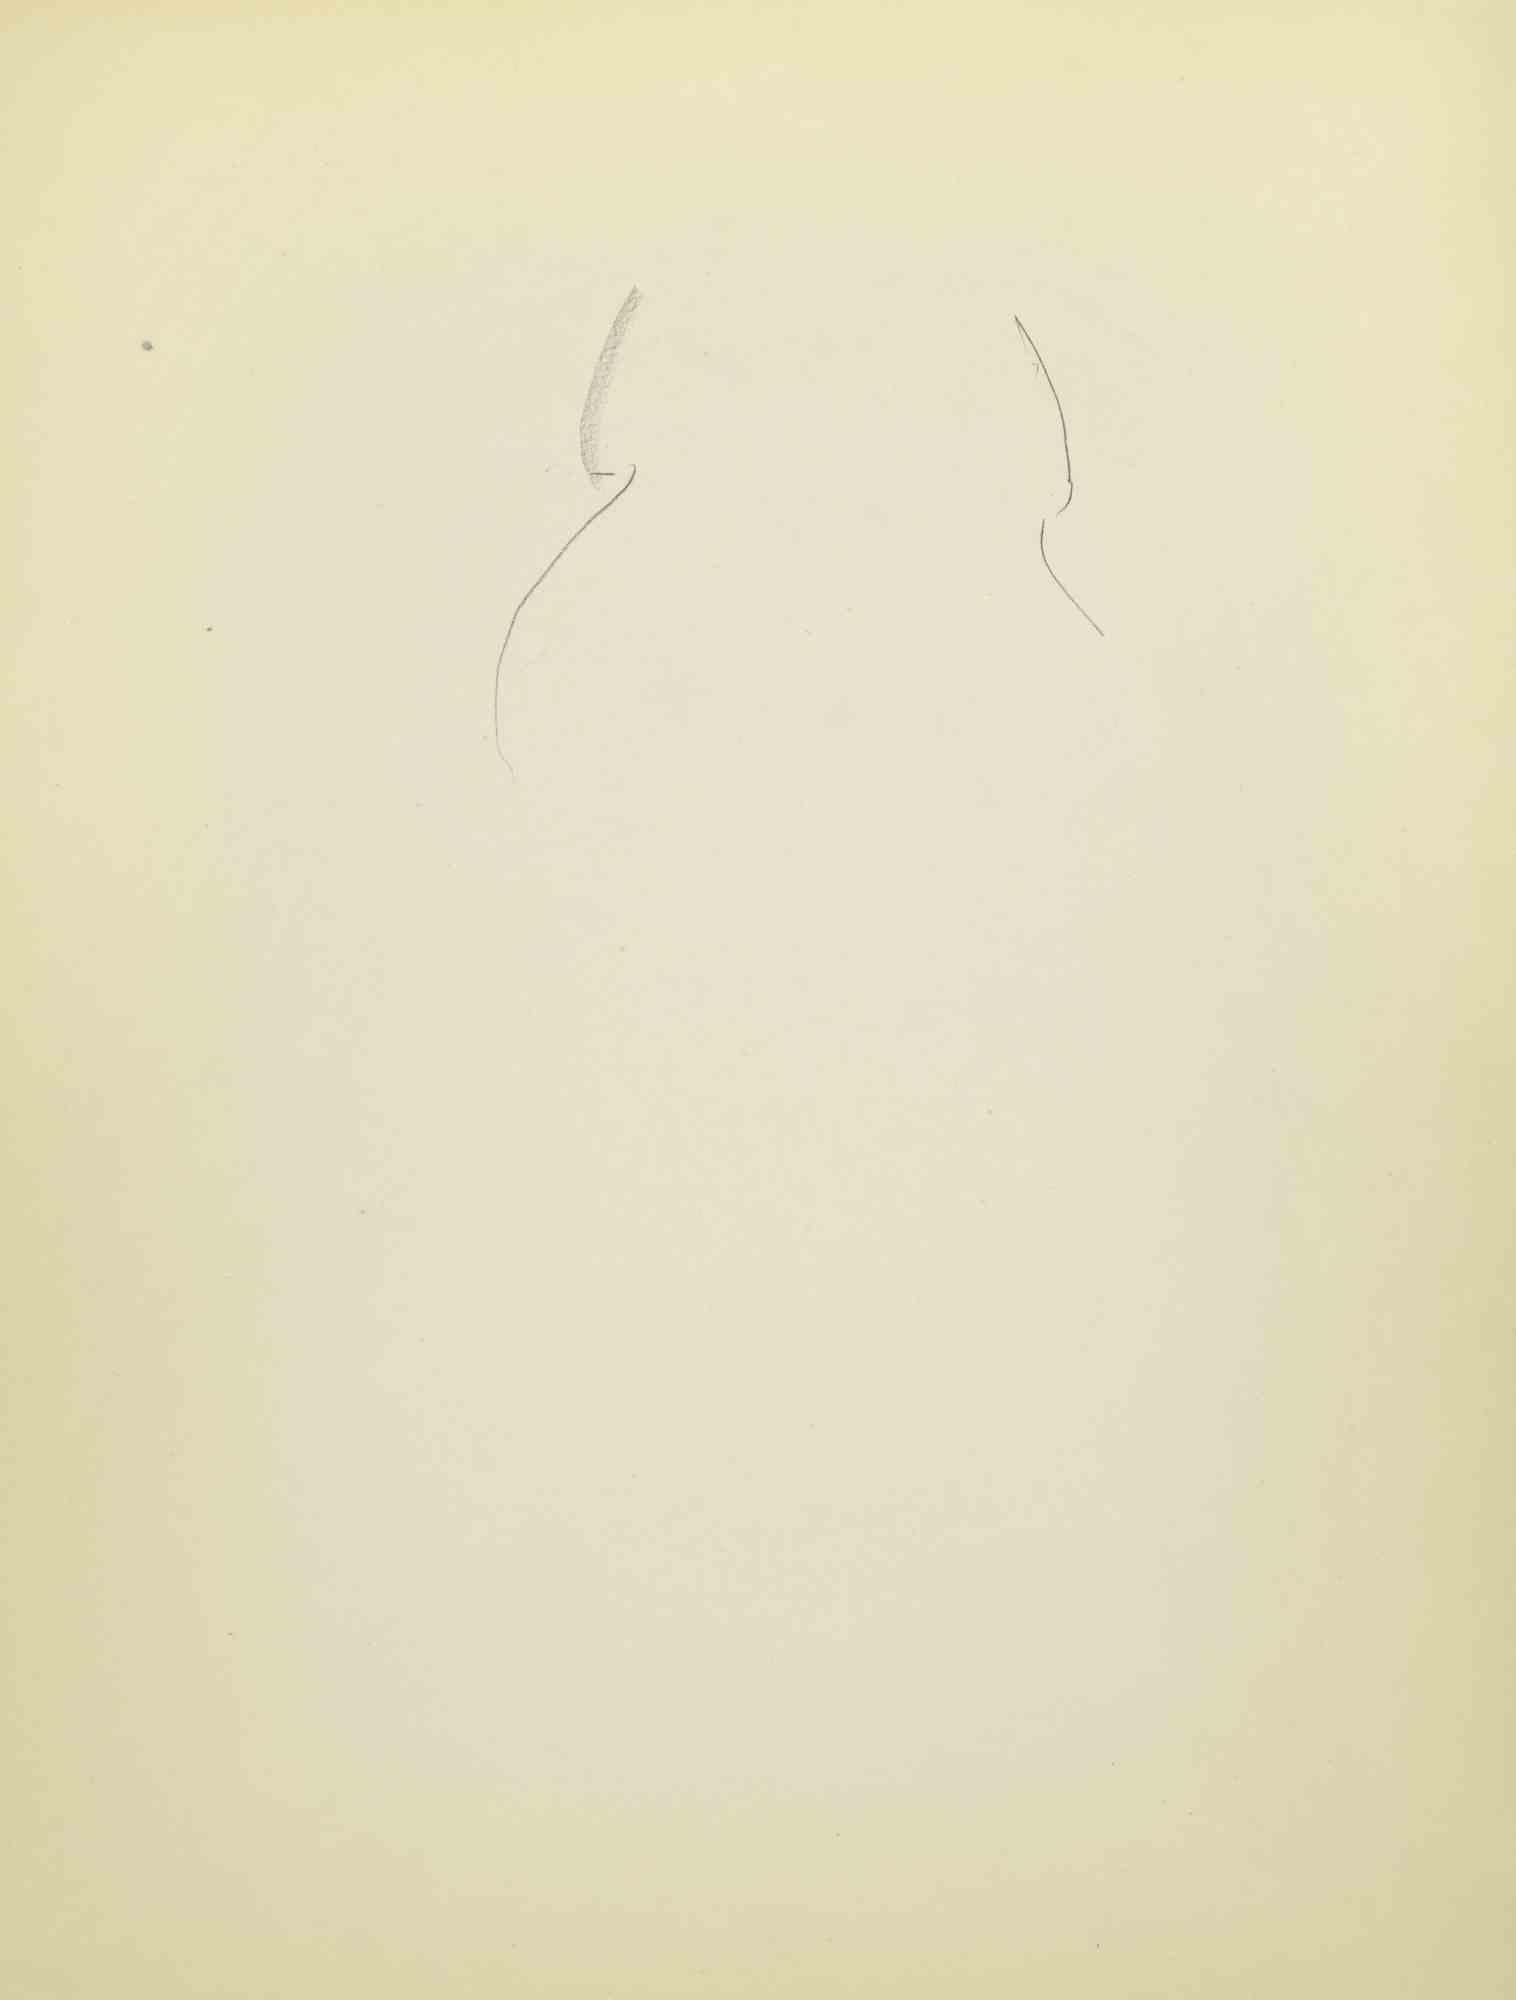 Esquisse d'un portrait est un dessin sur papier réalisé au milieu du 20e siècle par Flor David.

Bonnes conditions.

Flor David (1891-1958) ) :  pseudonyme de David Florence. Peintre au pastel. Il a été l'élève de Desirè Lucas. Il expose au Salon